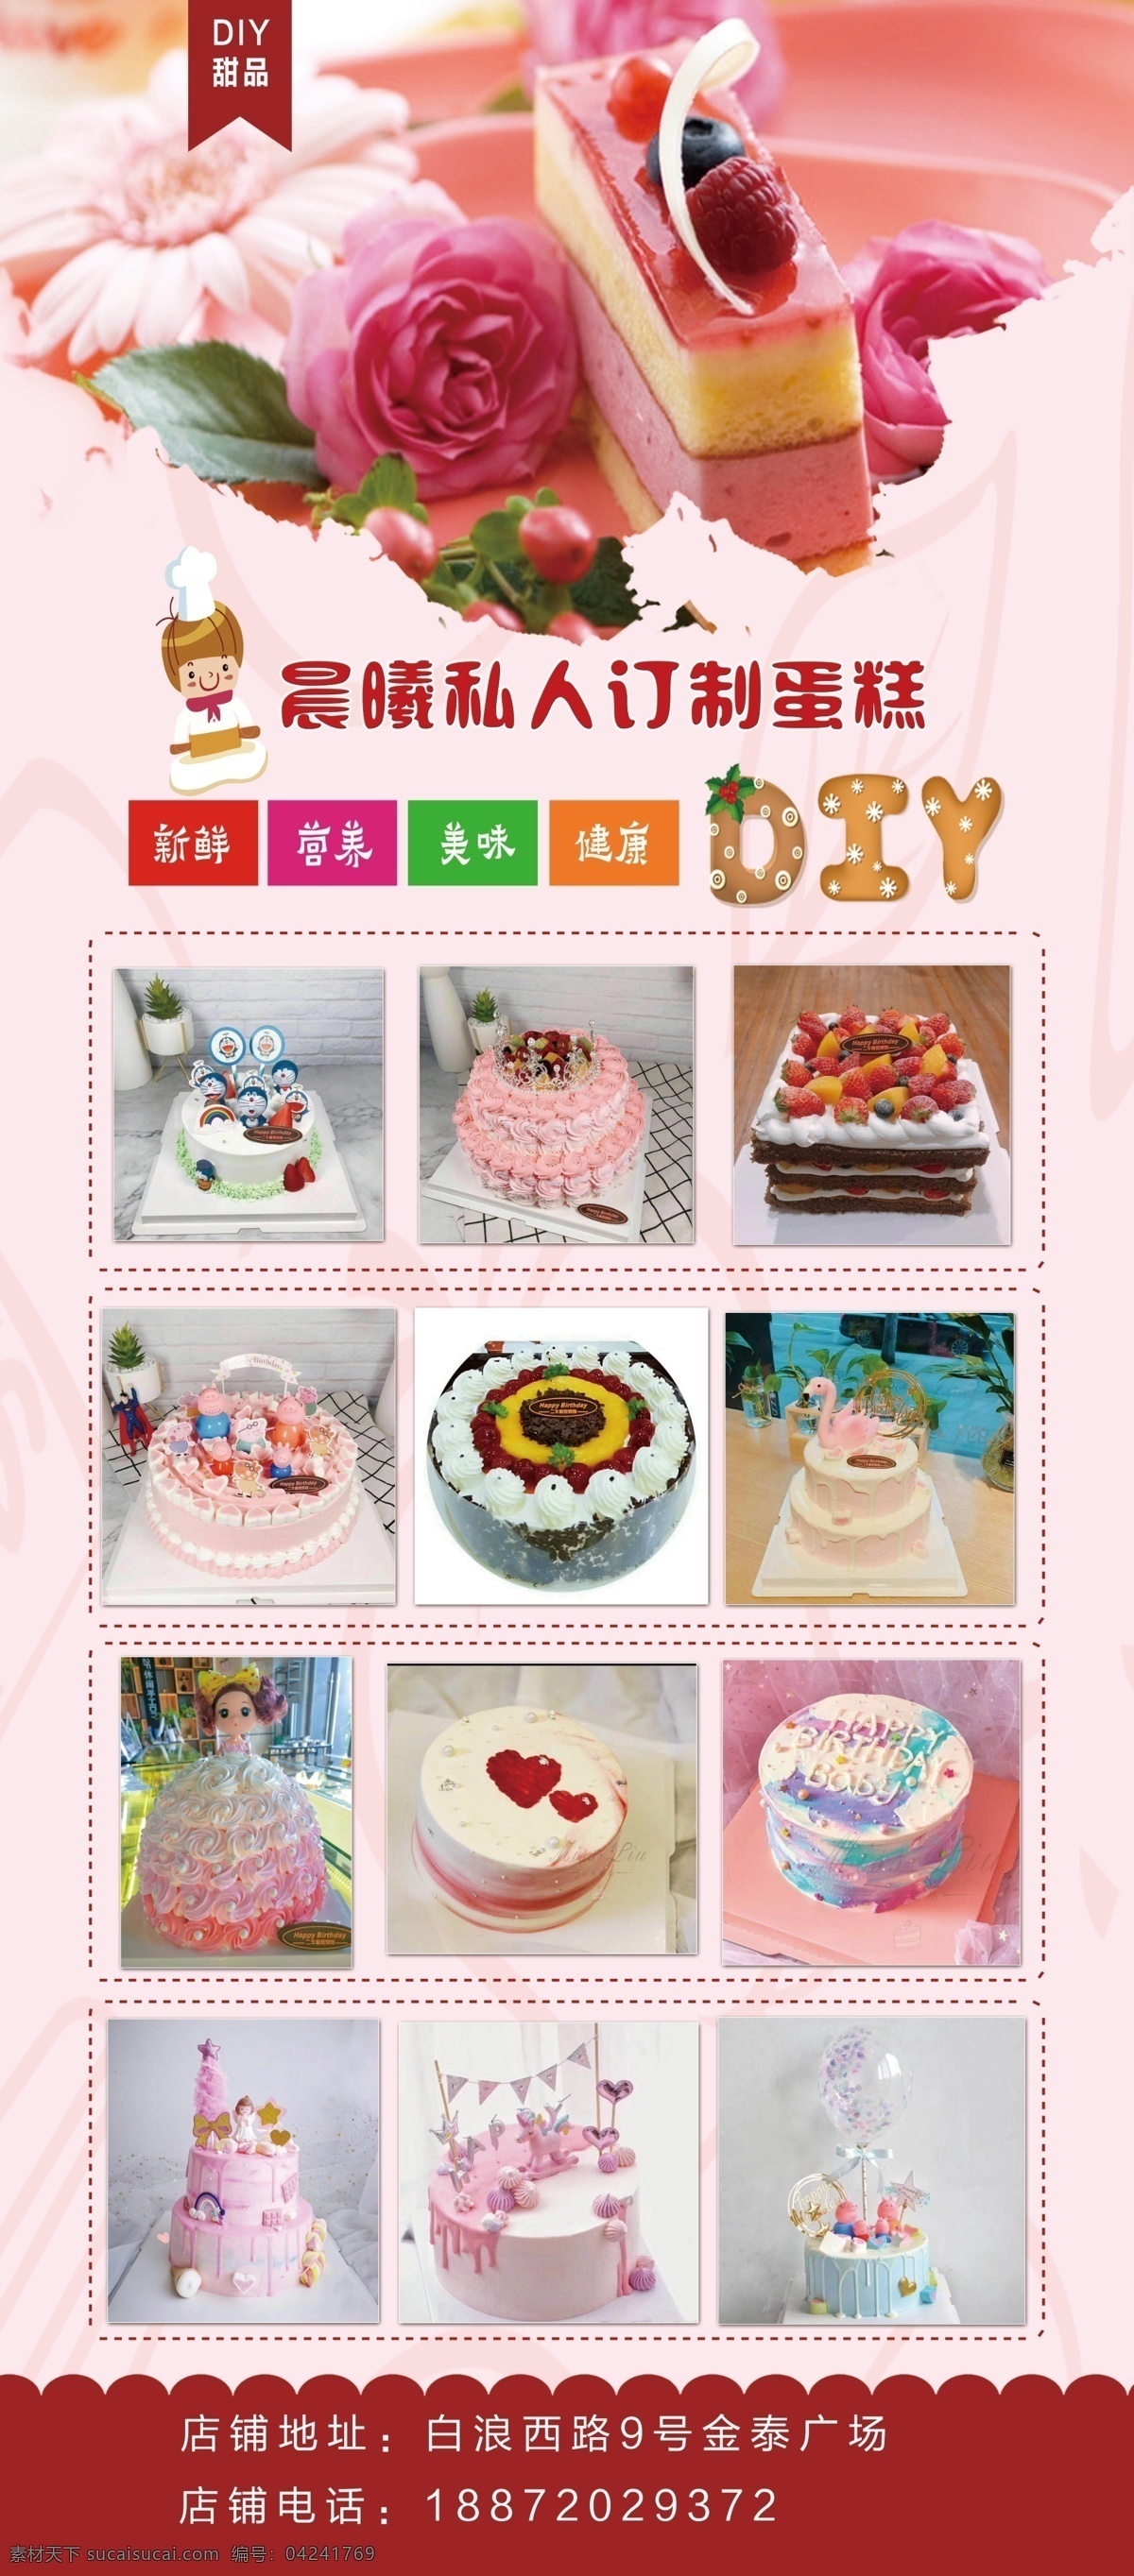 甜品展架 甜品海报 私人订制 蛋糕制作 展架应用 粉色系居多 包装设计